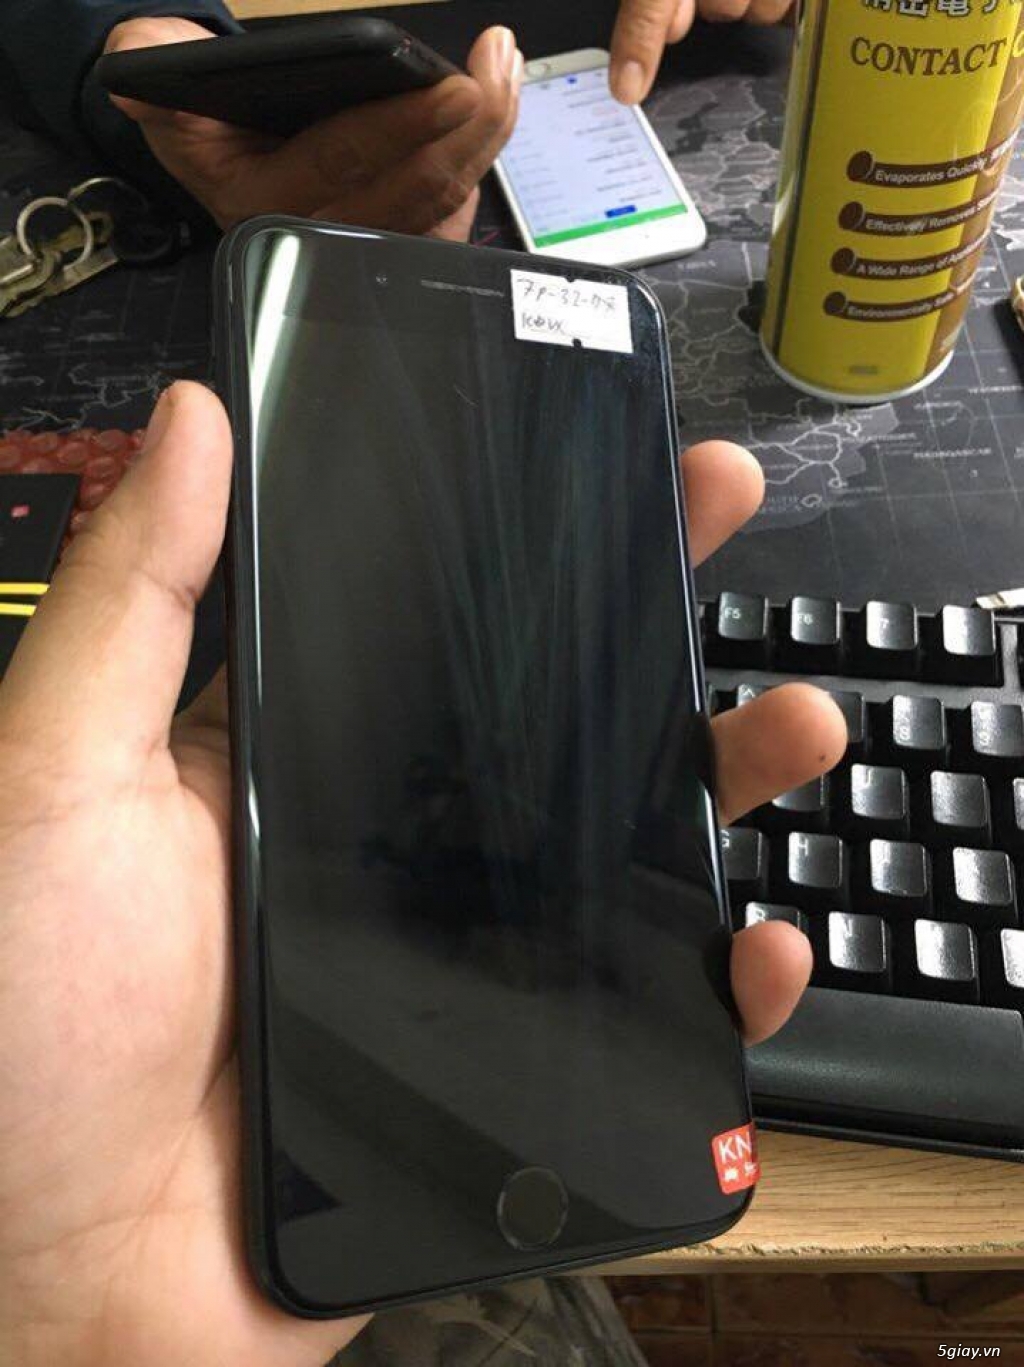 Bán iphone 7plus đen nhám zin keng tại hcm - 2